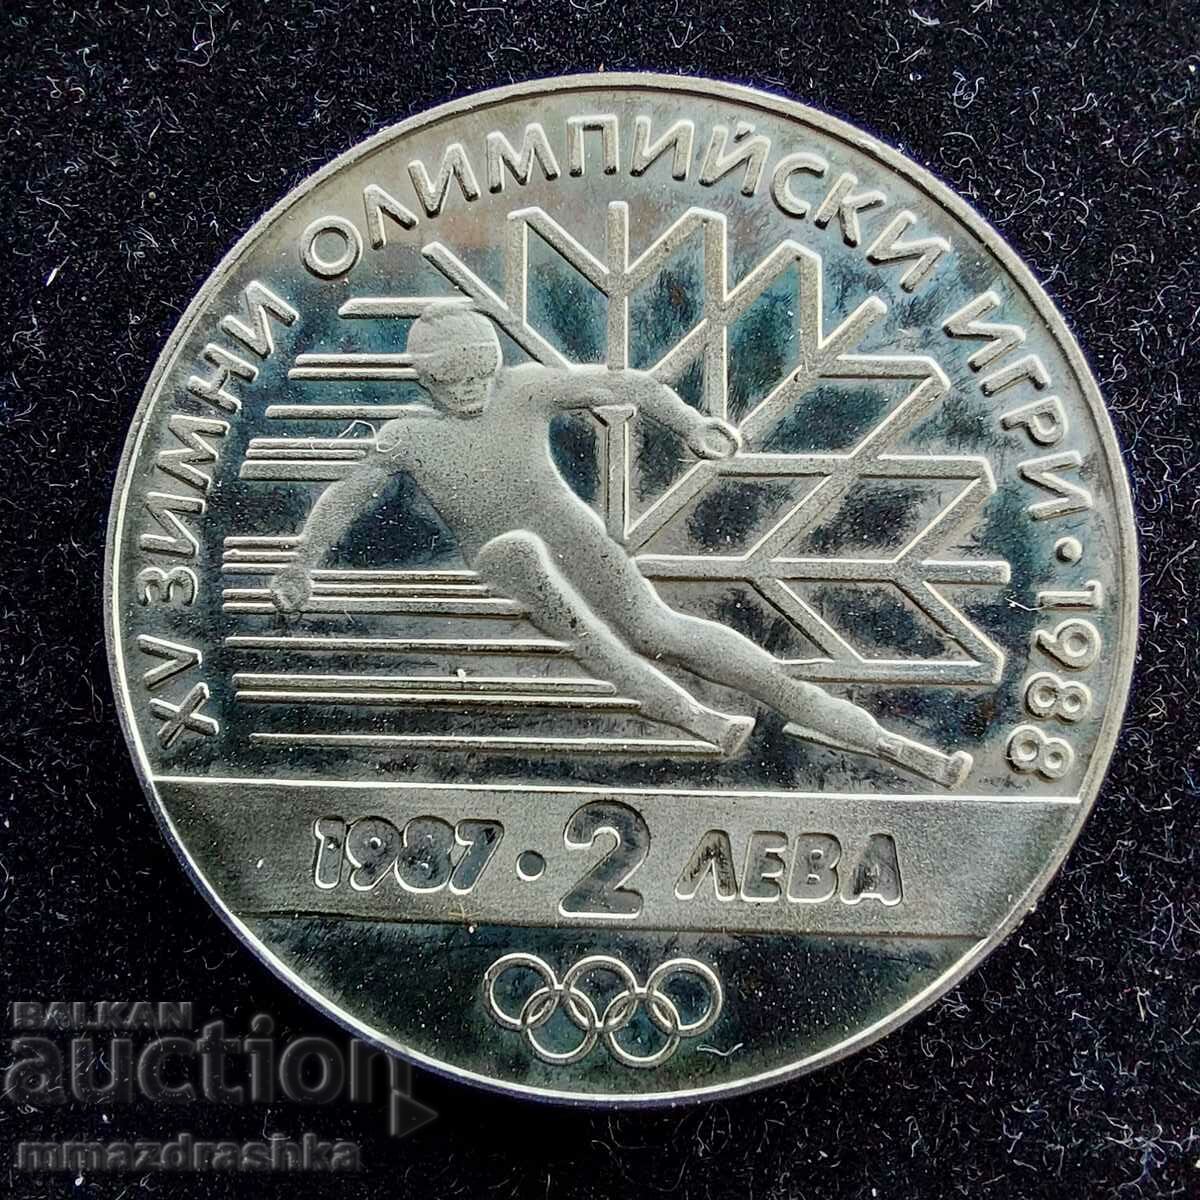 2 лева 1987, 15 зимни олимпийски игри